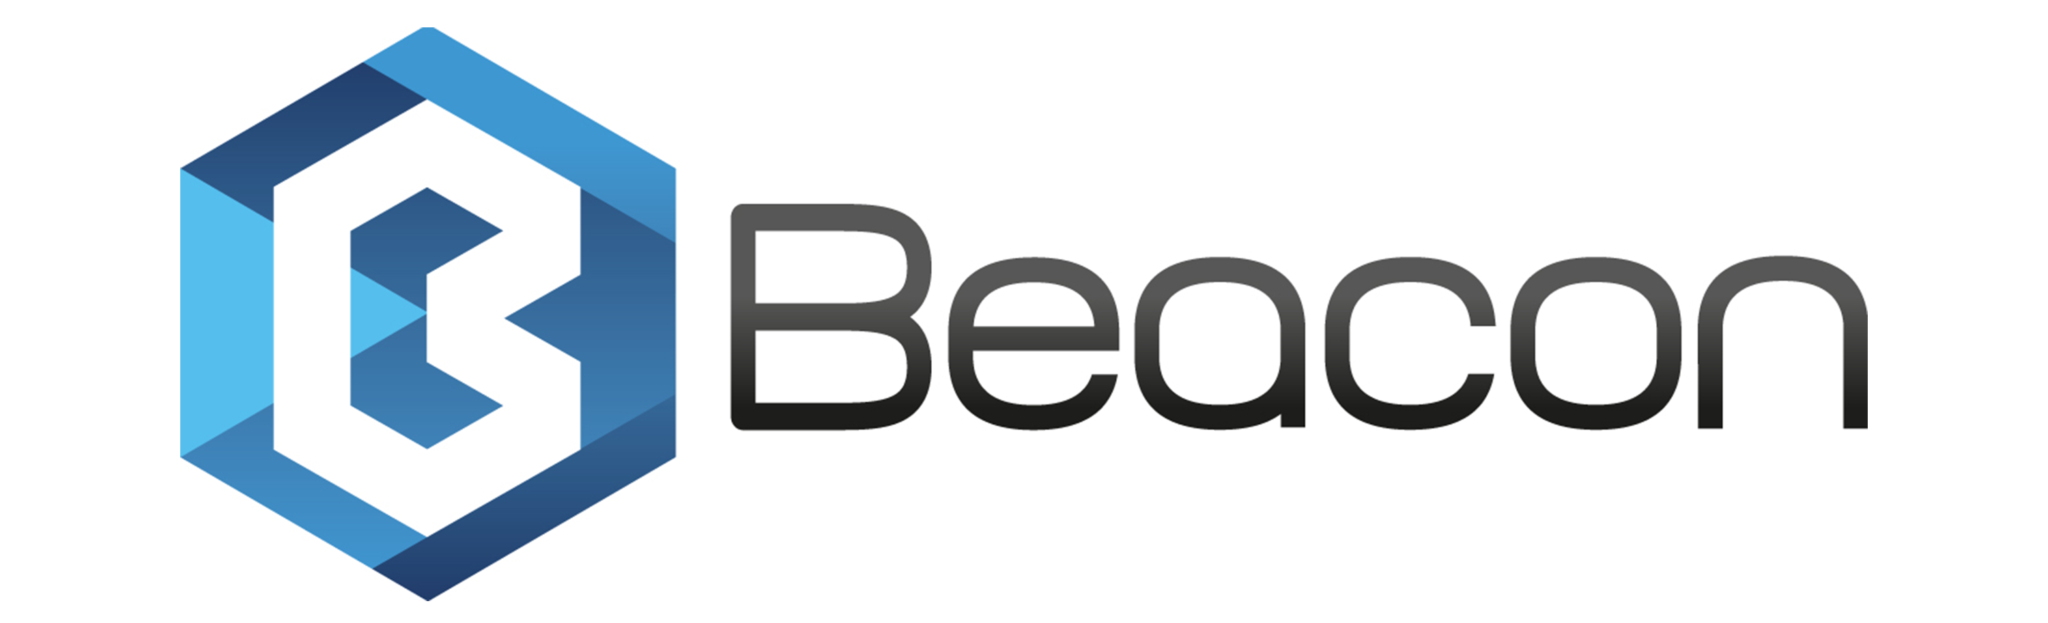 Beacon-logo-solo-MP-1-2048x623